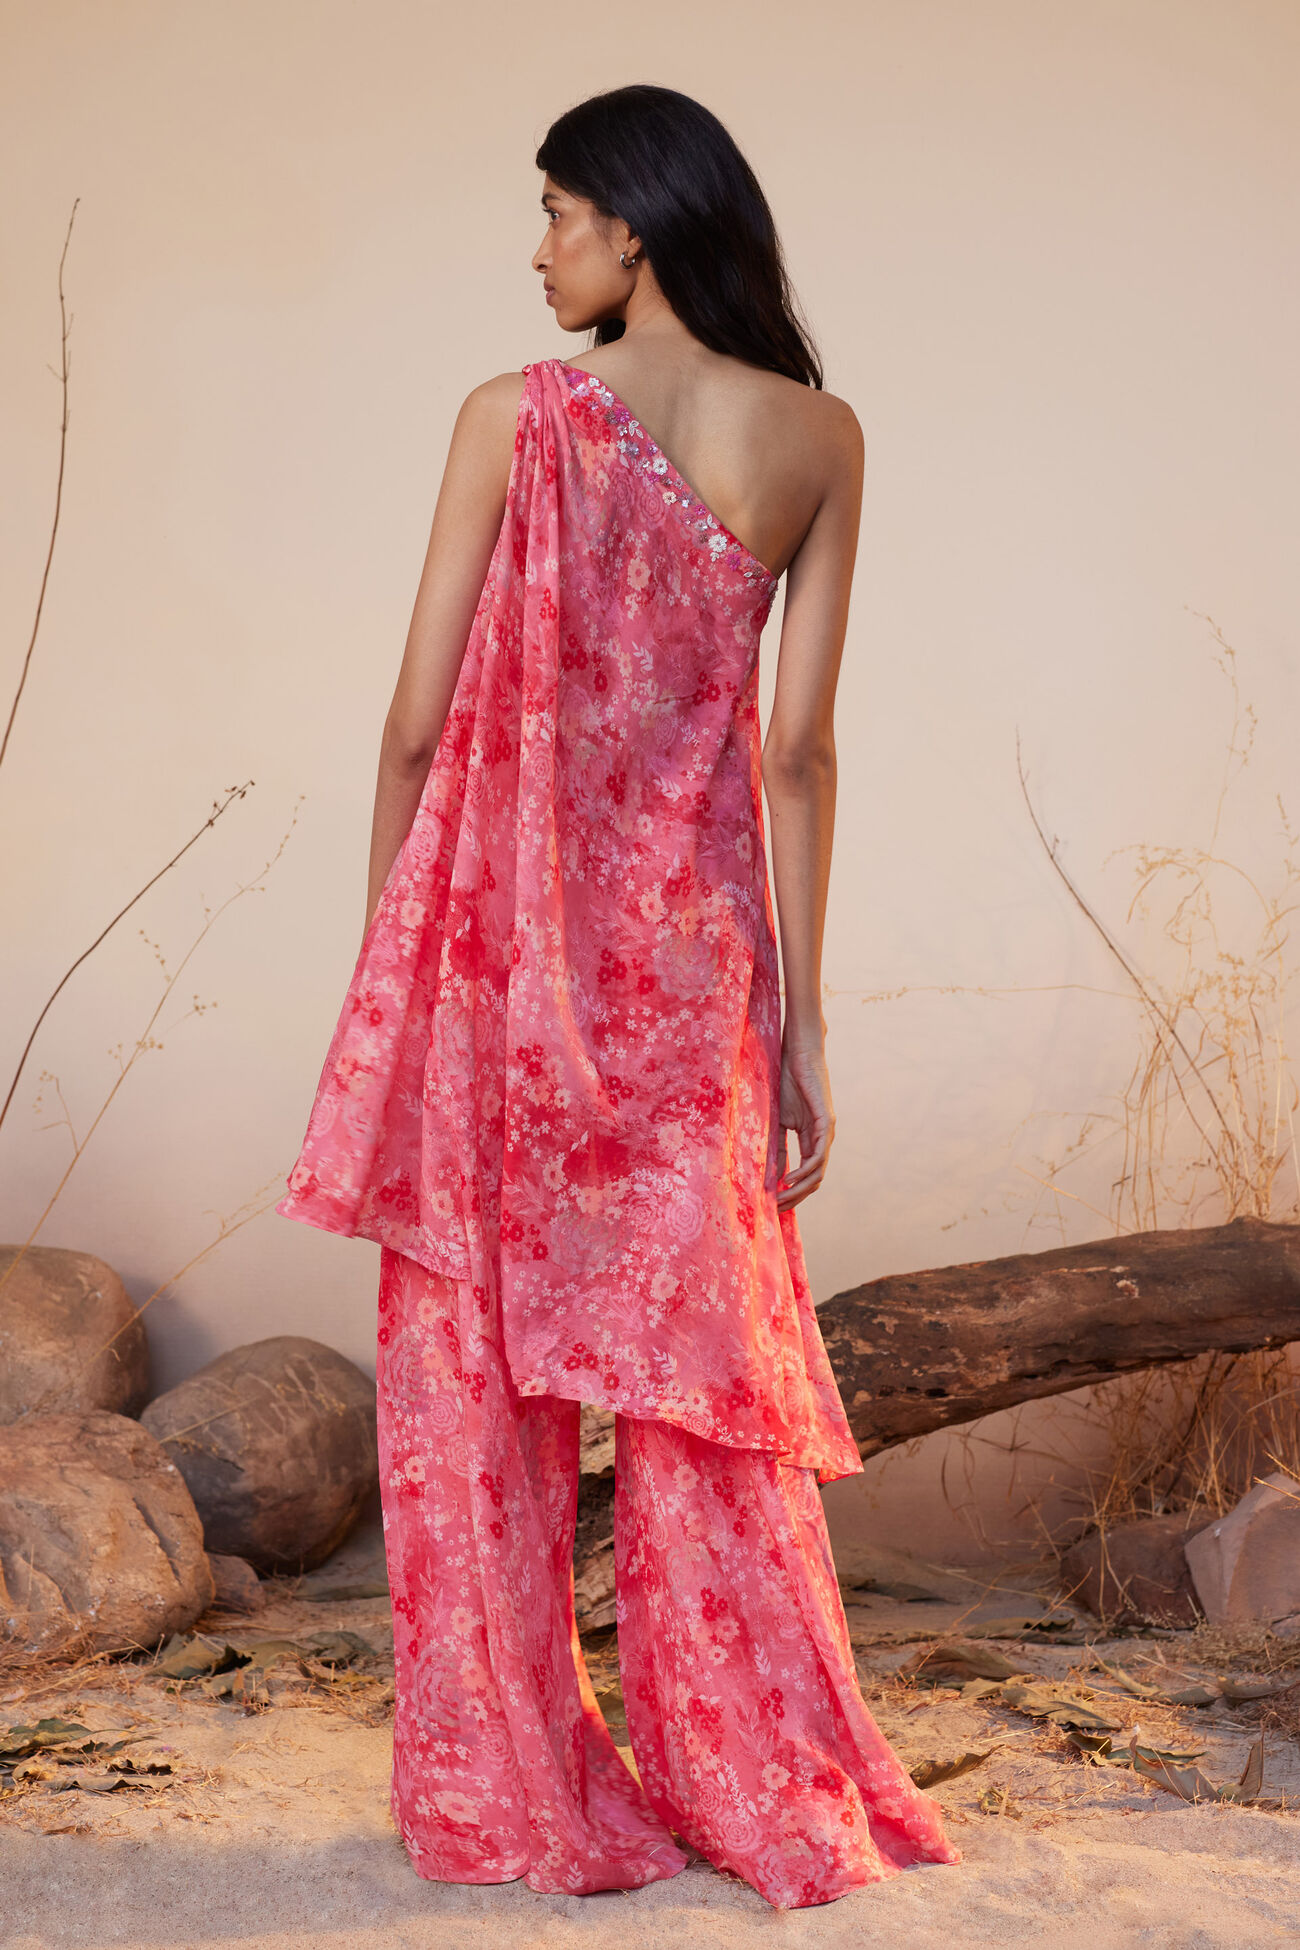 Pink Plain Designer Ladies Capri, 160-200 at Rs 230/piece in Ludhiana